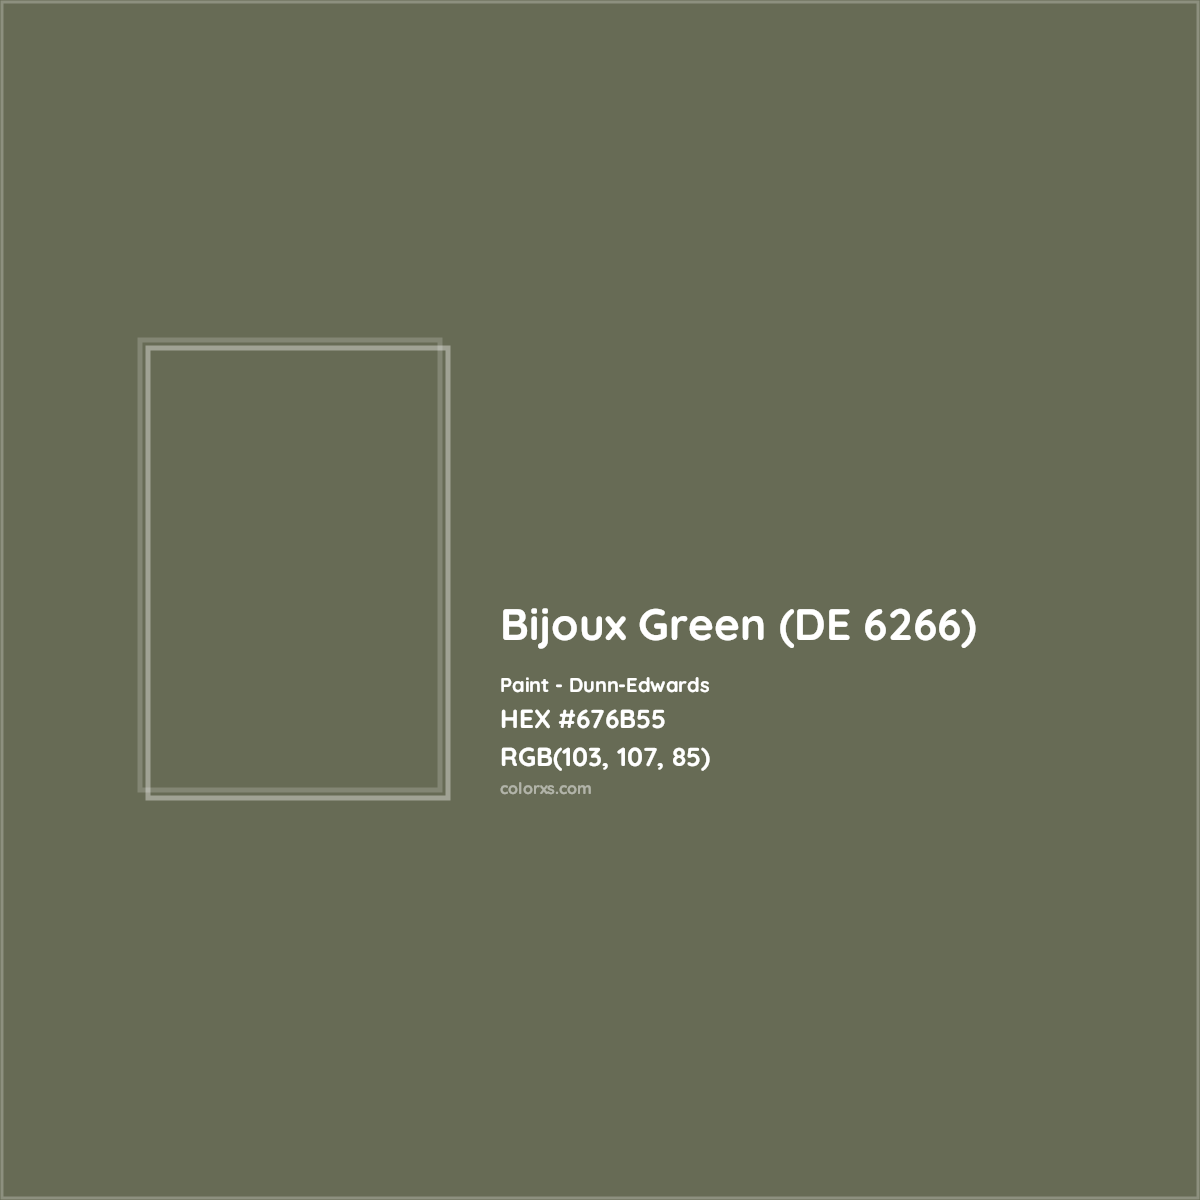 HEX #676B55 Bijoux Green (DE 6266) Paint Dunn-Edwards - Color Code